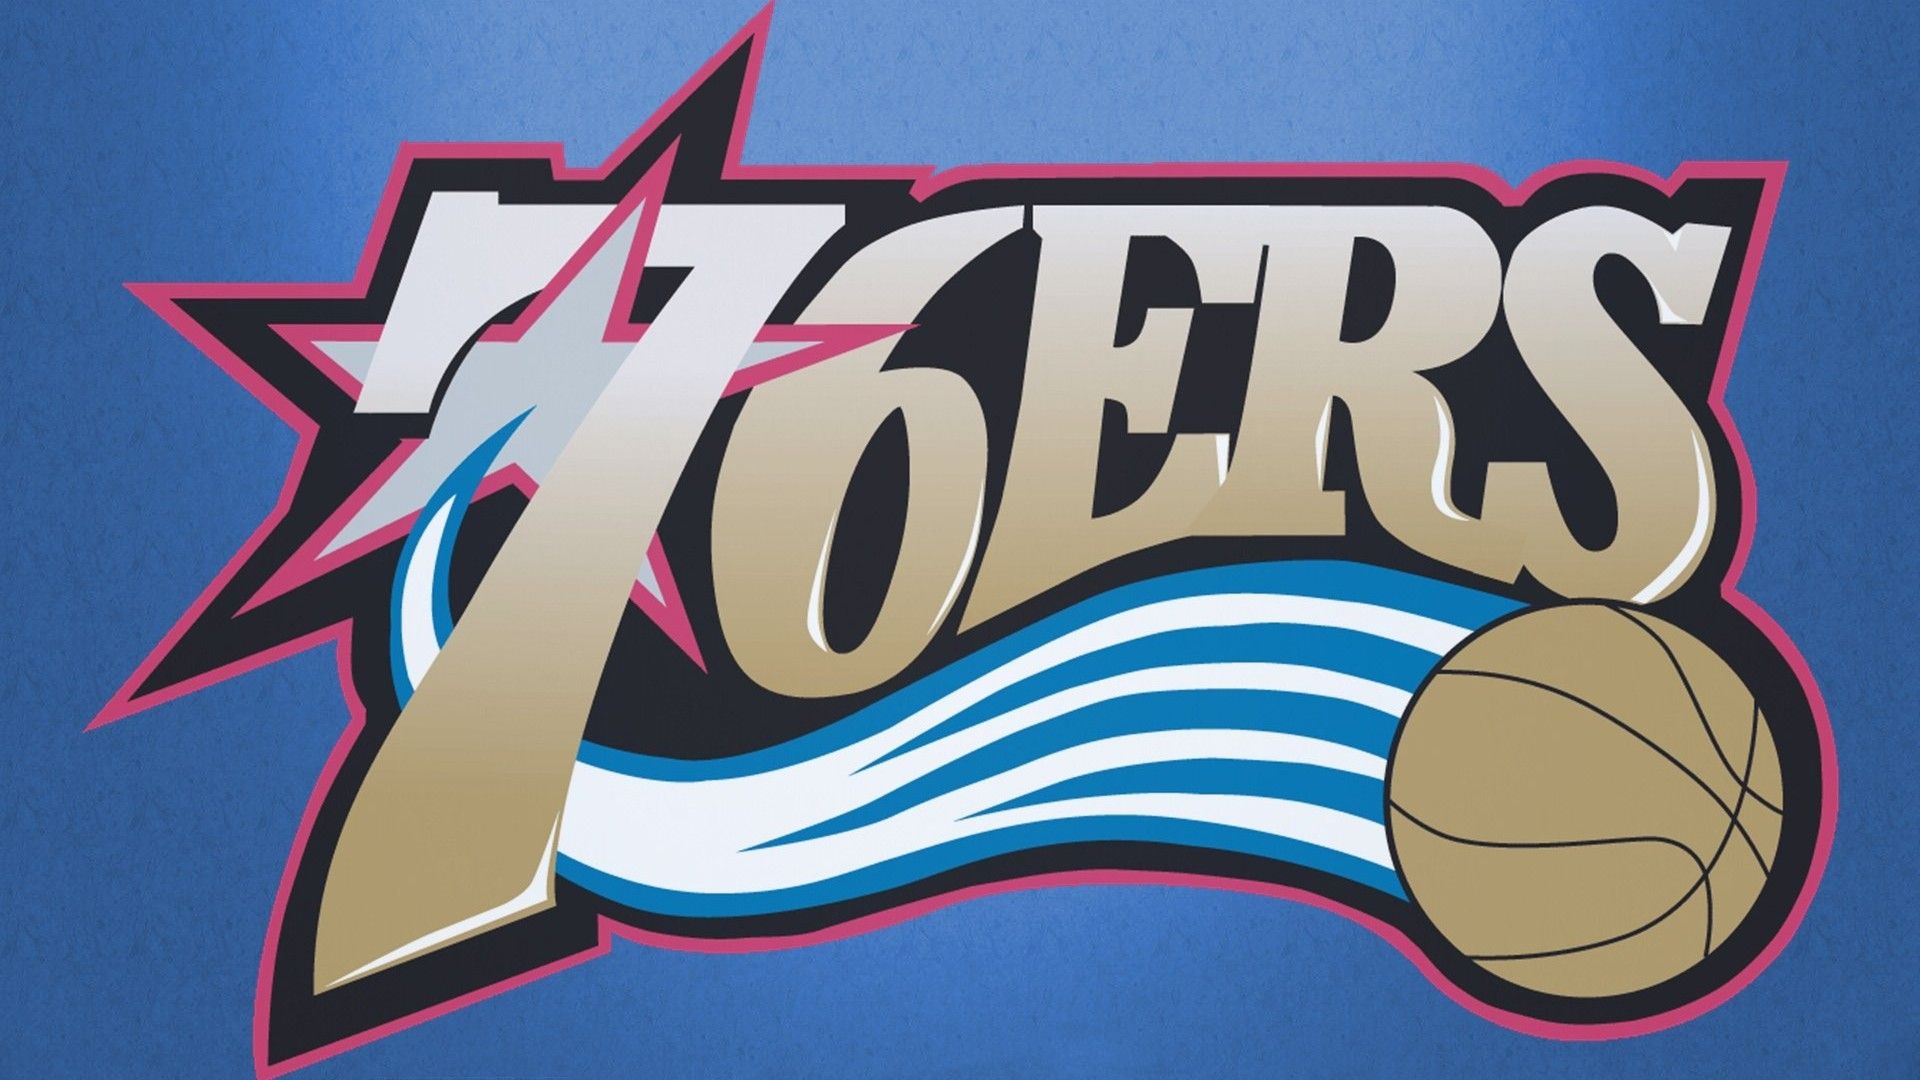 Philadelphia 76ers Wallpaper For Mac Background Basketball Wallpaper. Basketball wallpaper, 76ers, Philadelphia 76ers